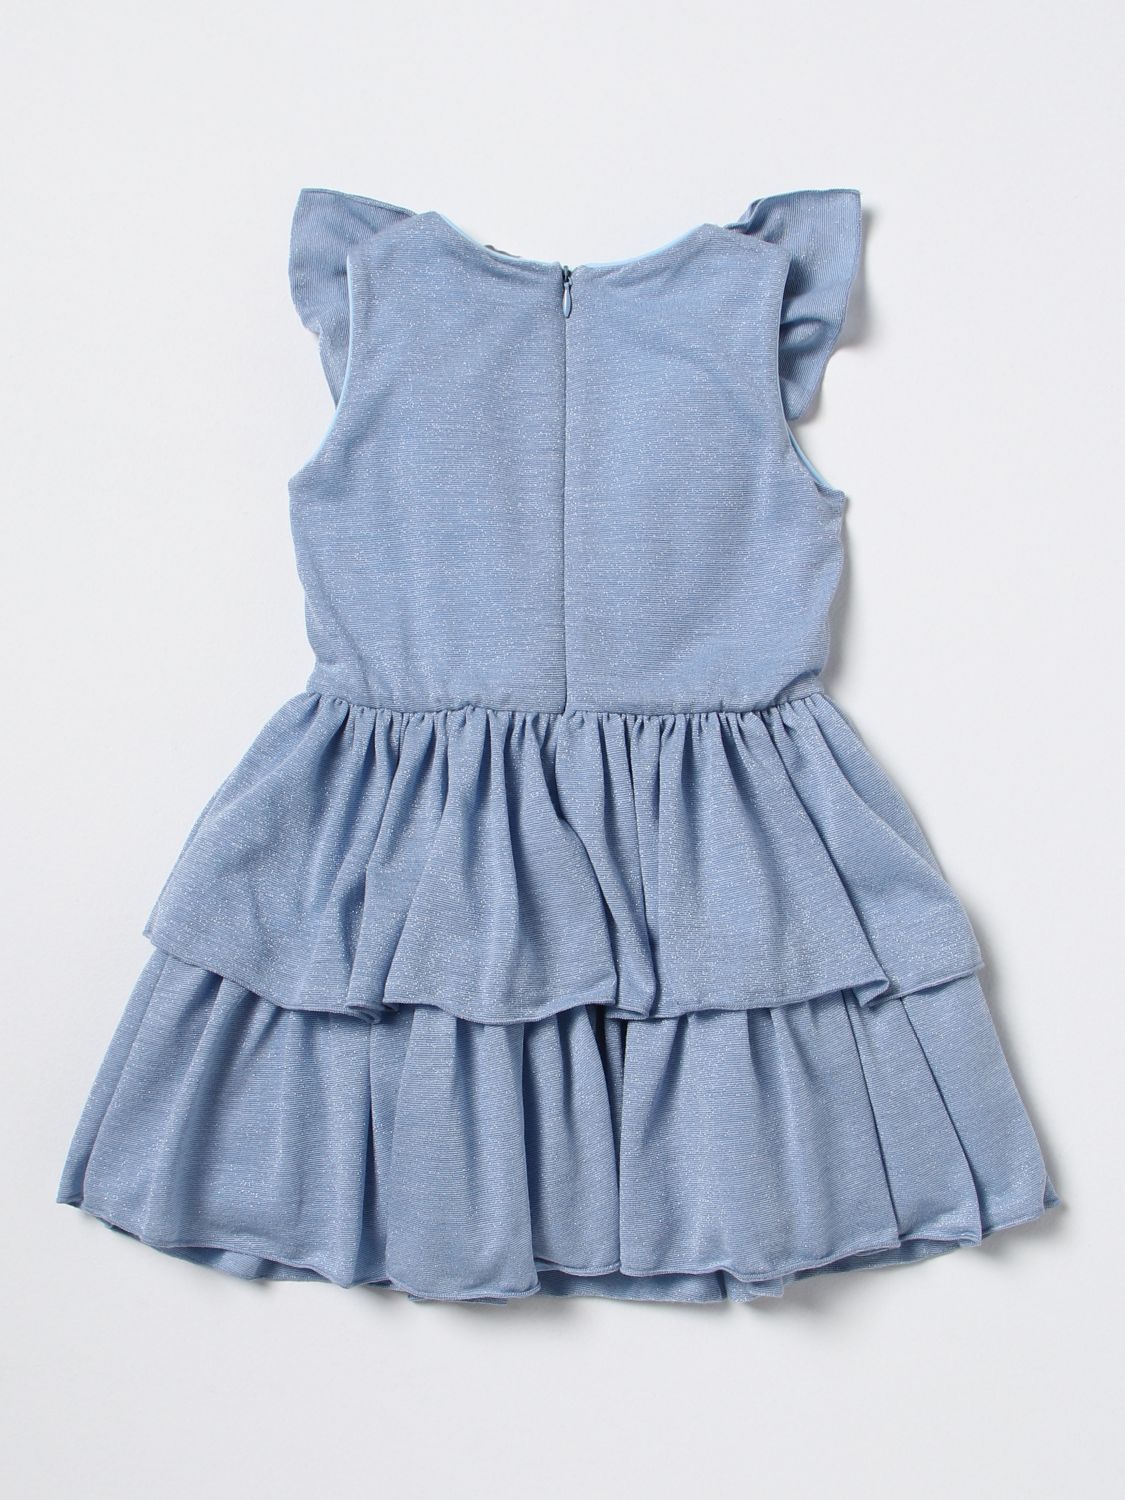 LIU JO KIDS: dress for girls - Gnawed Blue | Liu Jo Kids dress ...